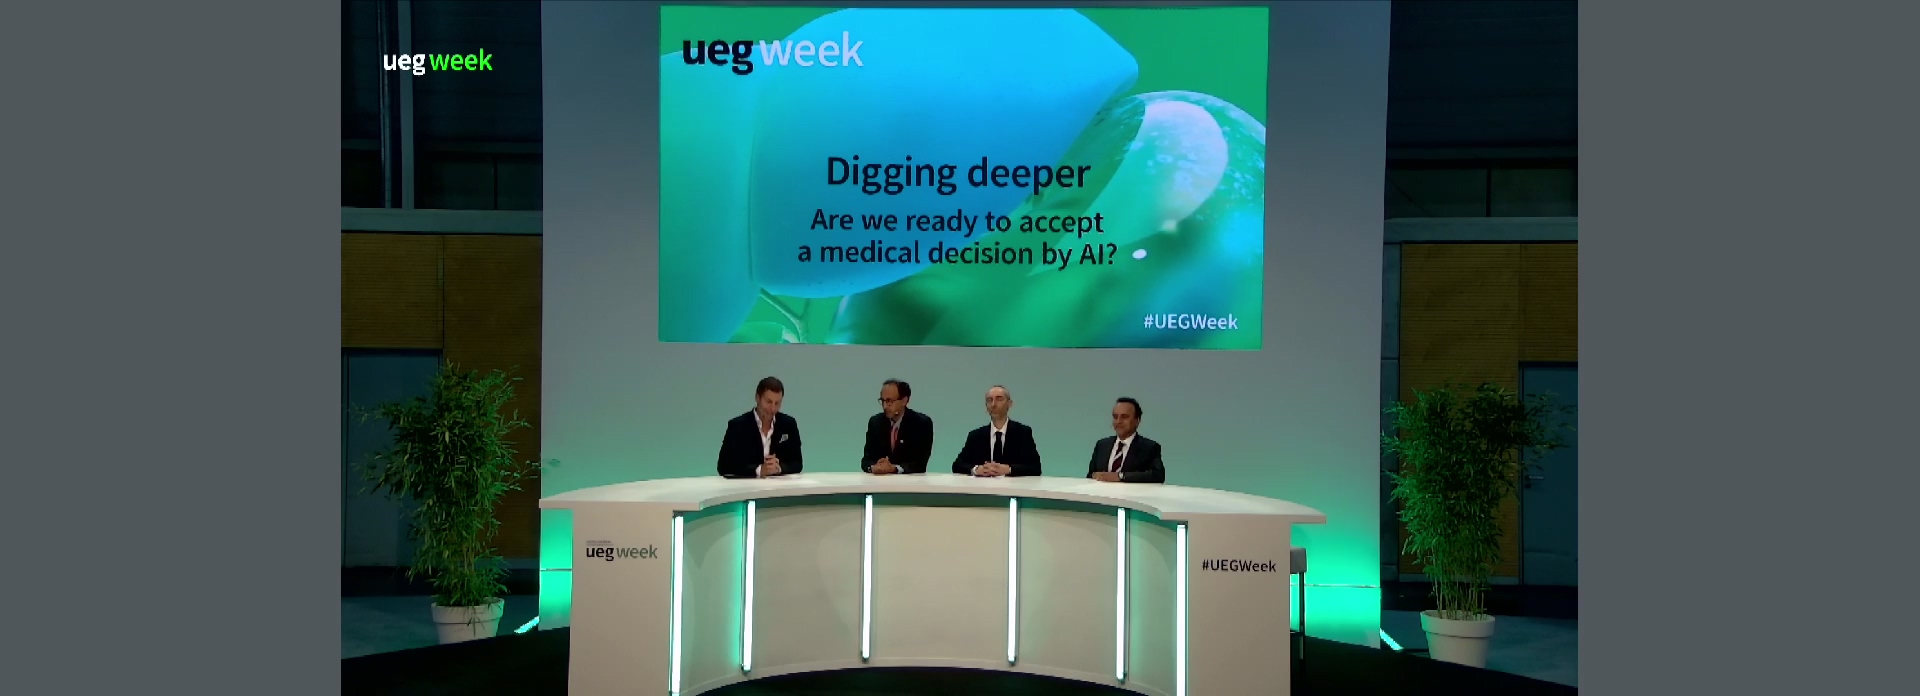 UEG Week: Digging deeper